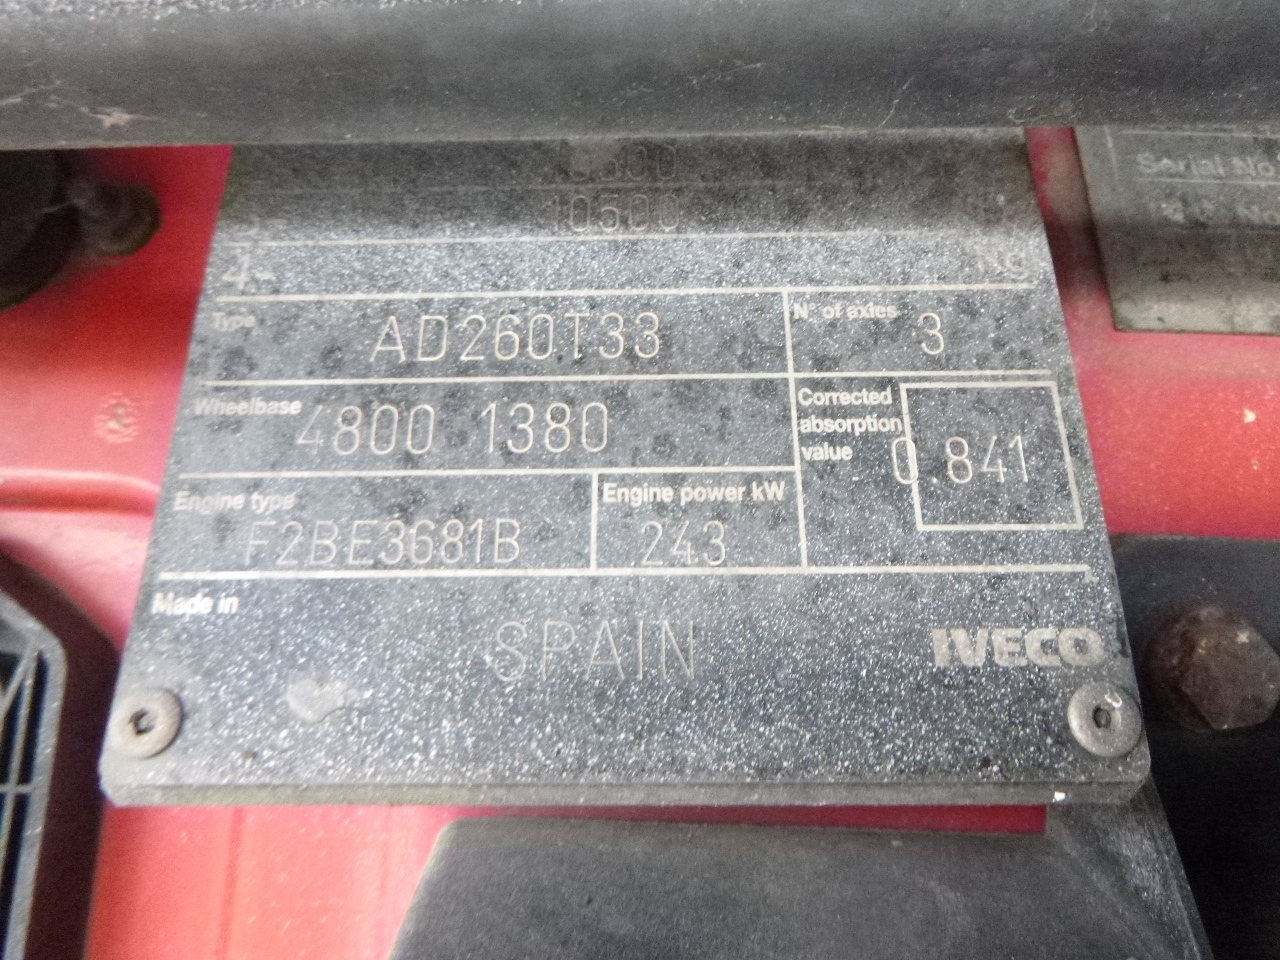 Самосвал, Автоманипулятор Iveco AD260T33 6X4 RHD tipper + HMF crane: фото 29